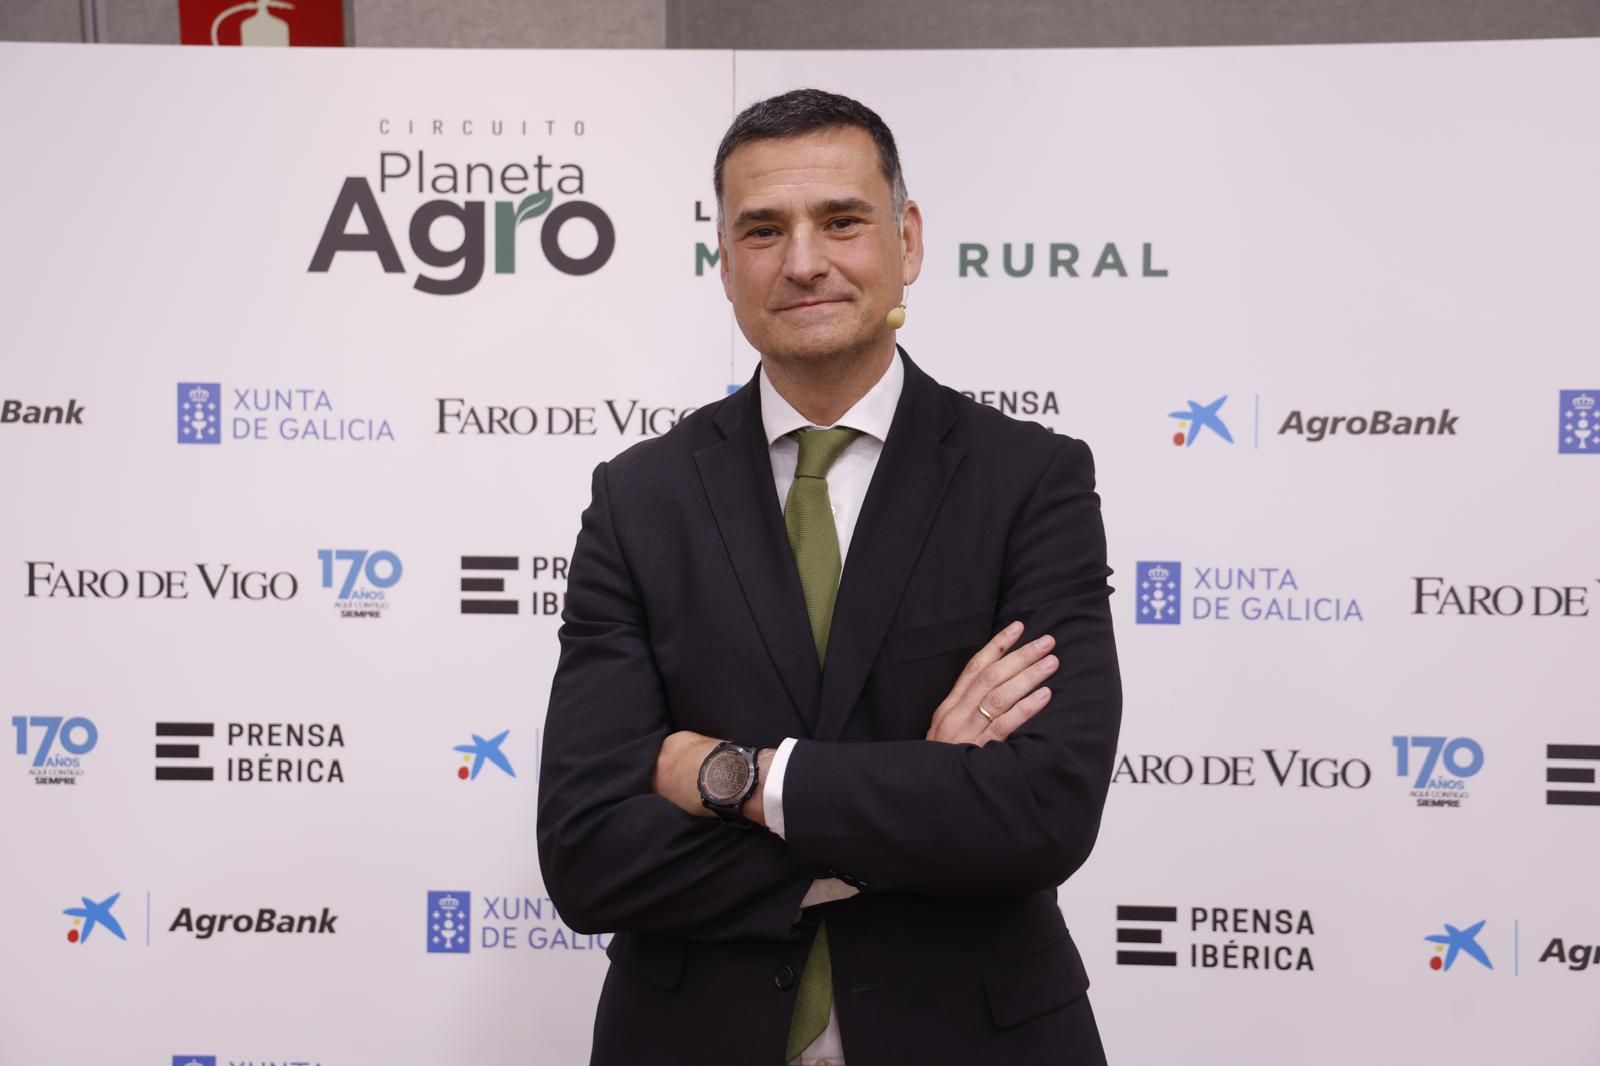 Alfonso del Portillo, director de Agrobank en la dirección territorial del norte.